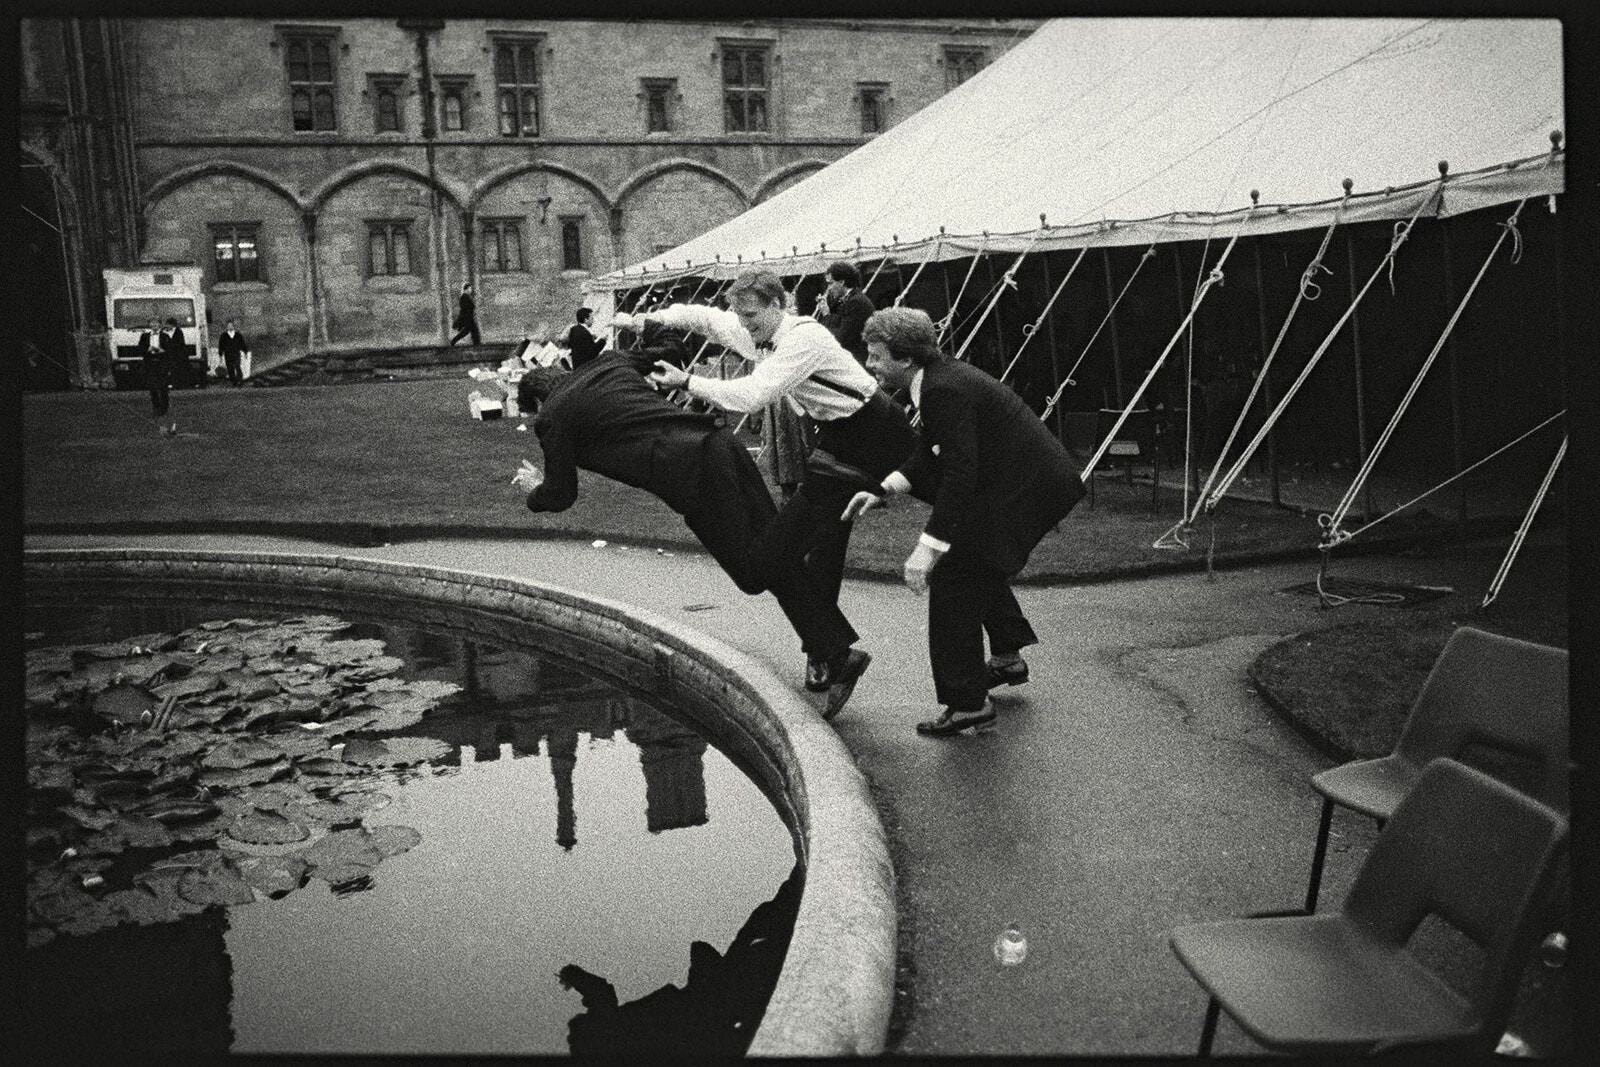 Бал в колледже Крайст-черч Оксфордского университета, 1986. Фотограф Дафидд Джонс